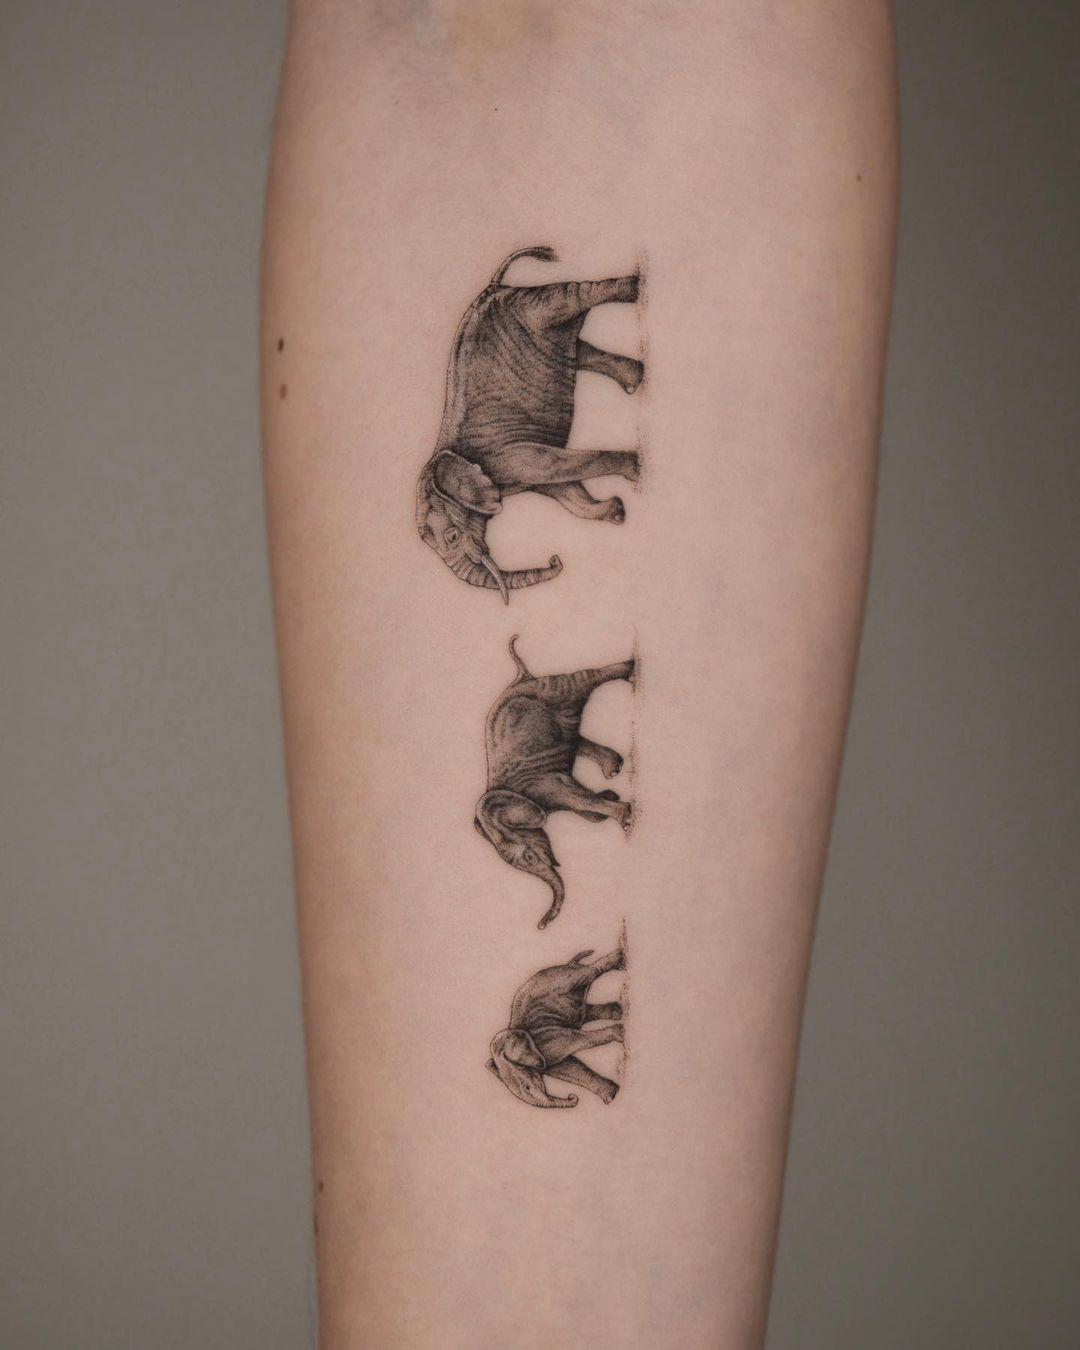 Tatuaje de elefantes en el antebrazo representando la familia